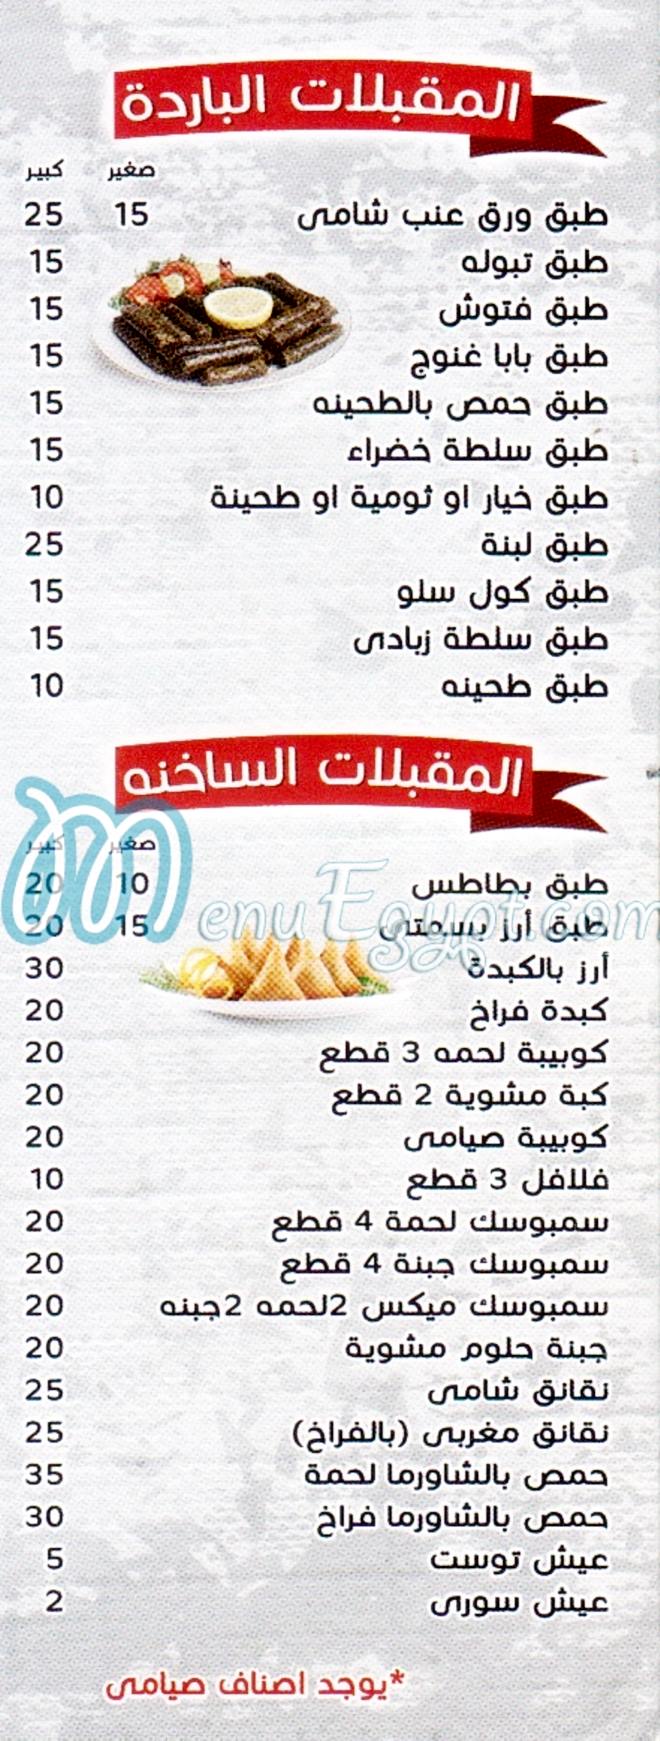 Shawrma Al Mazen delivery menu